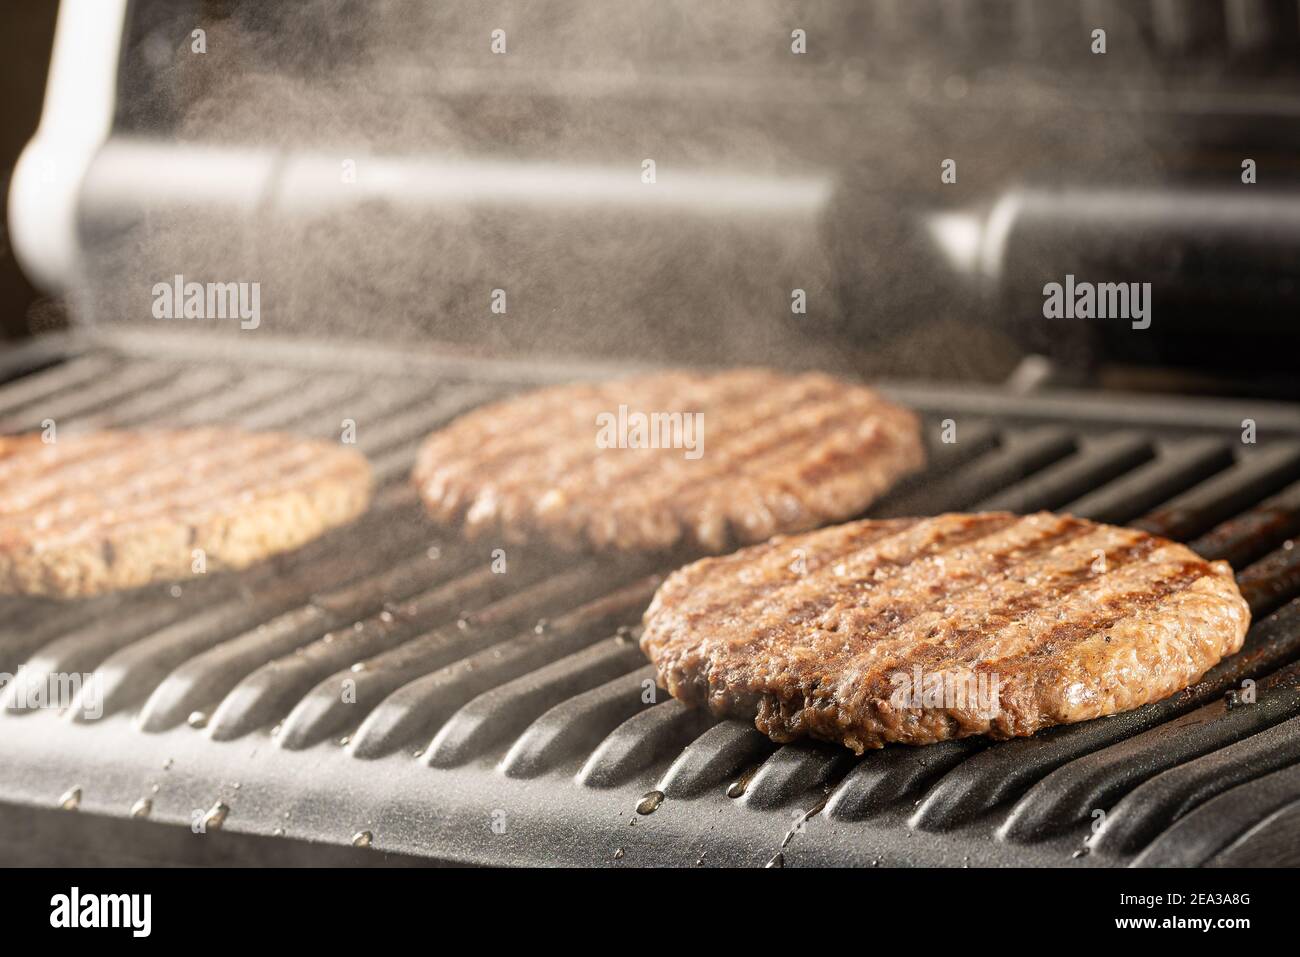 Côtelettes de bœuf juteuses et fraîches sur un gril. Cuisiner un hamburger à la maison. Concept de nourriture délicieuse et saine Banque D'Images